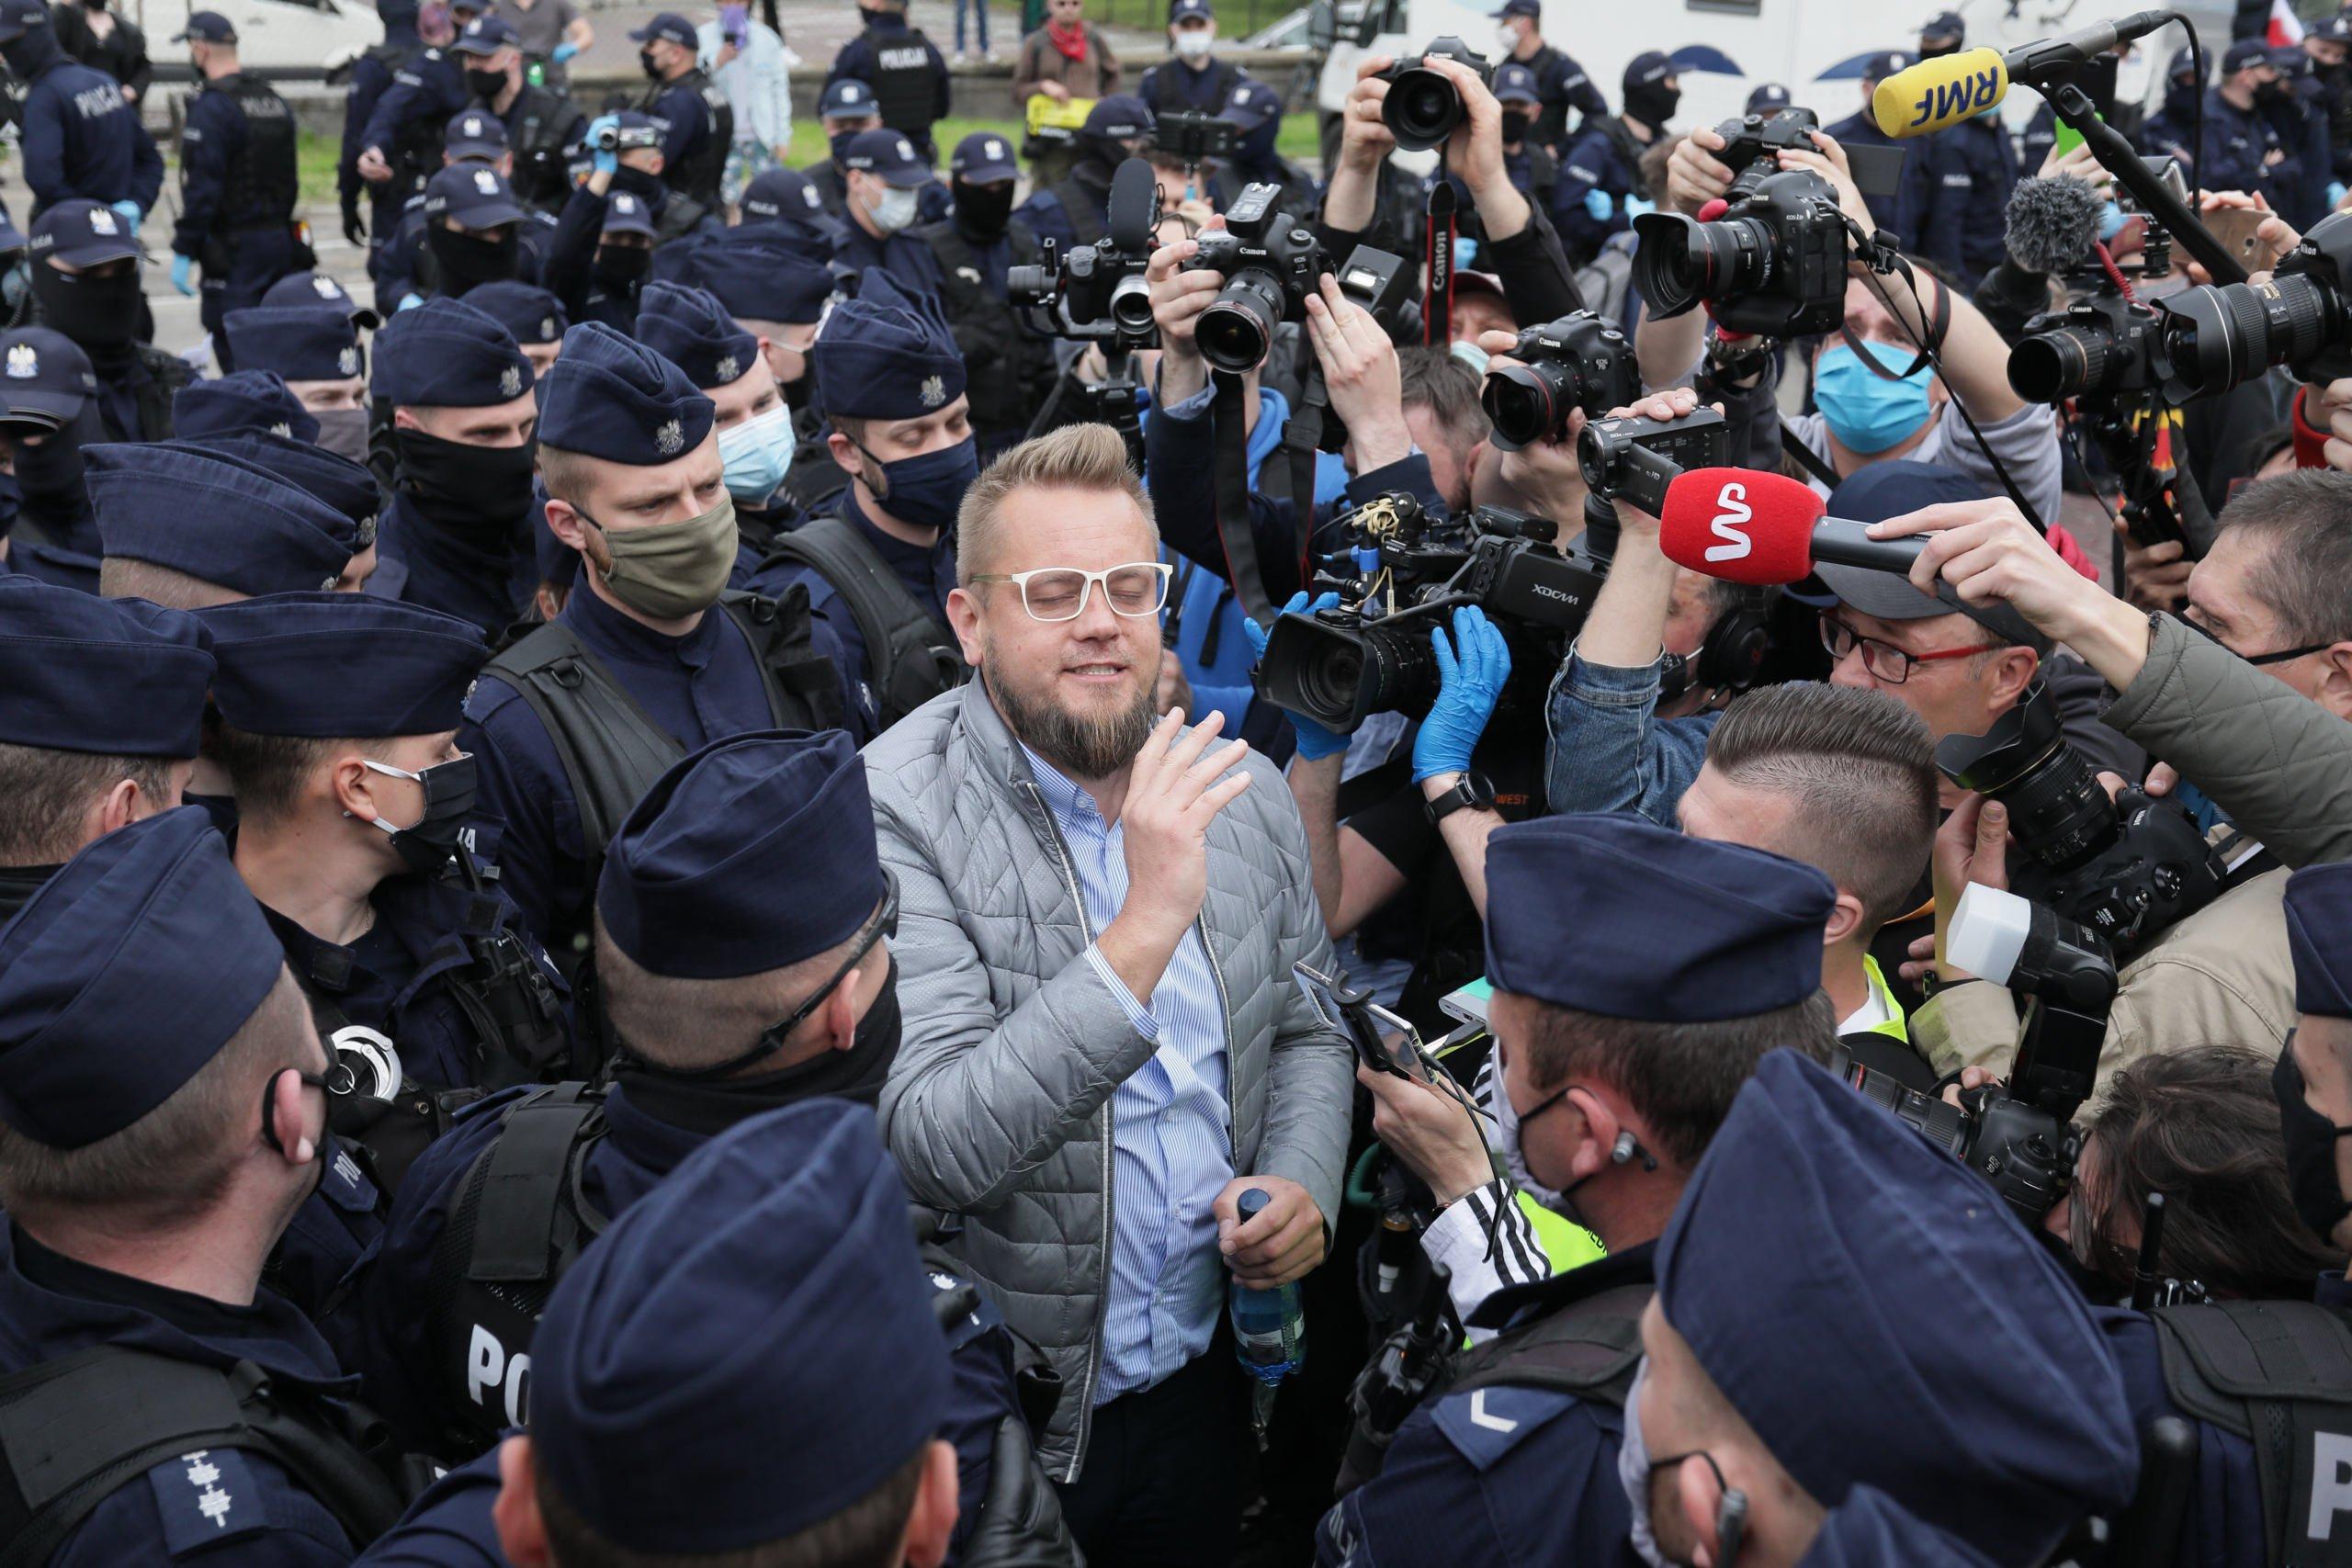 Paweł Tanajno otoczony przez policję